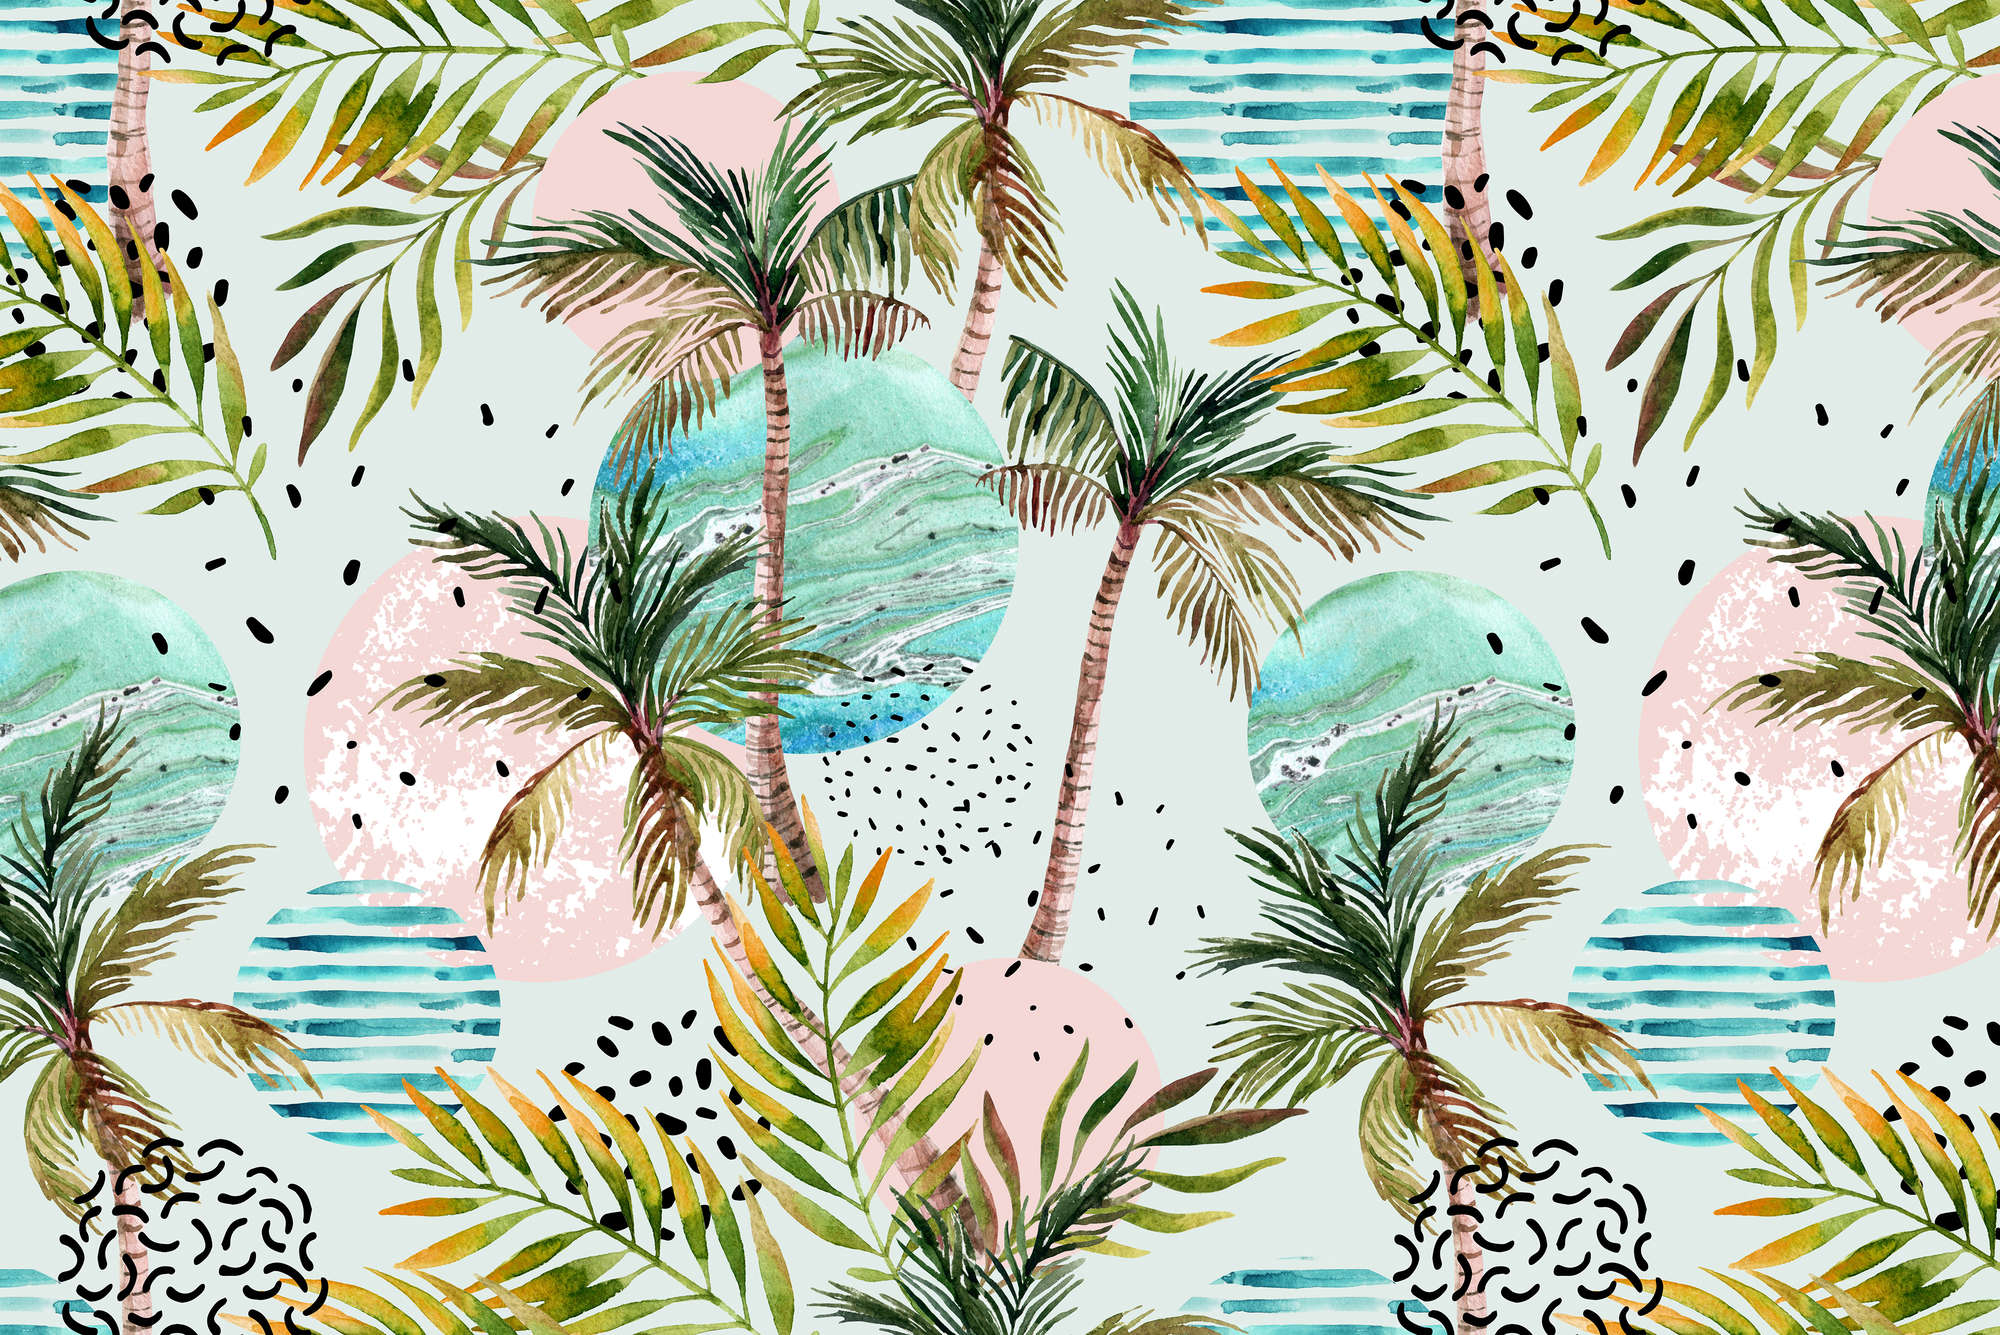             Grafisch Behang Palmbomen met Golfsymbolen op Premium Smooth Fleece
        